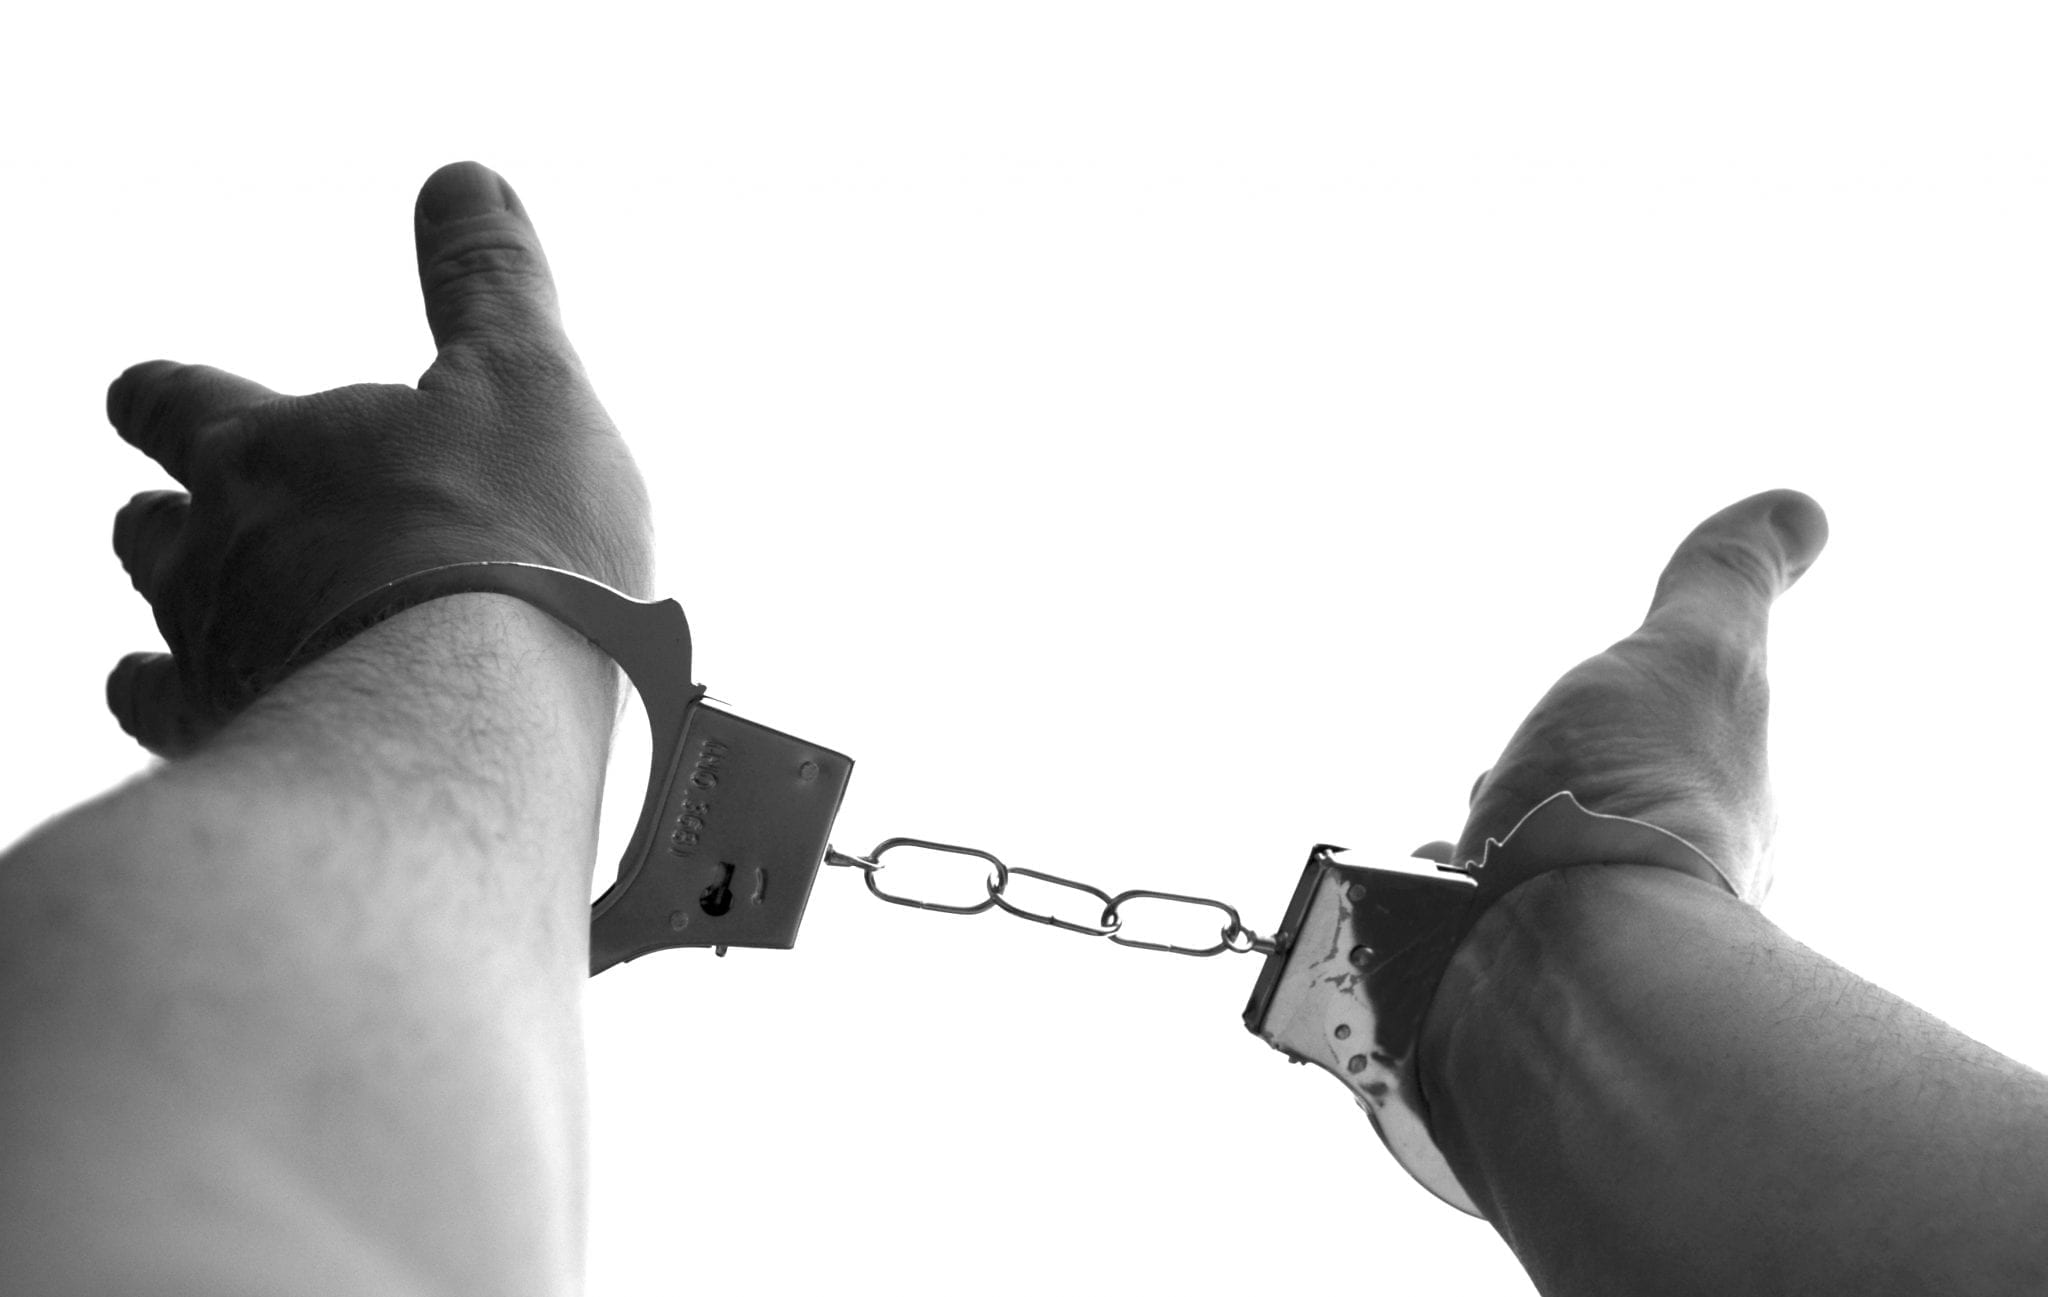 Man in handcuffs; image via Pxhere, CC0.